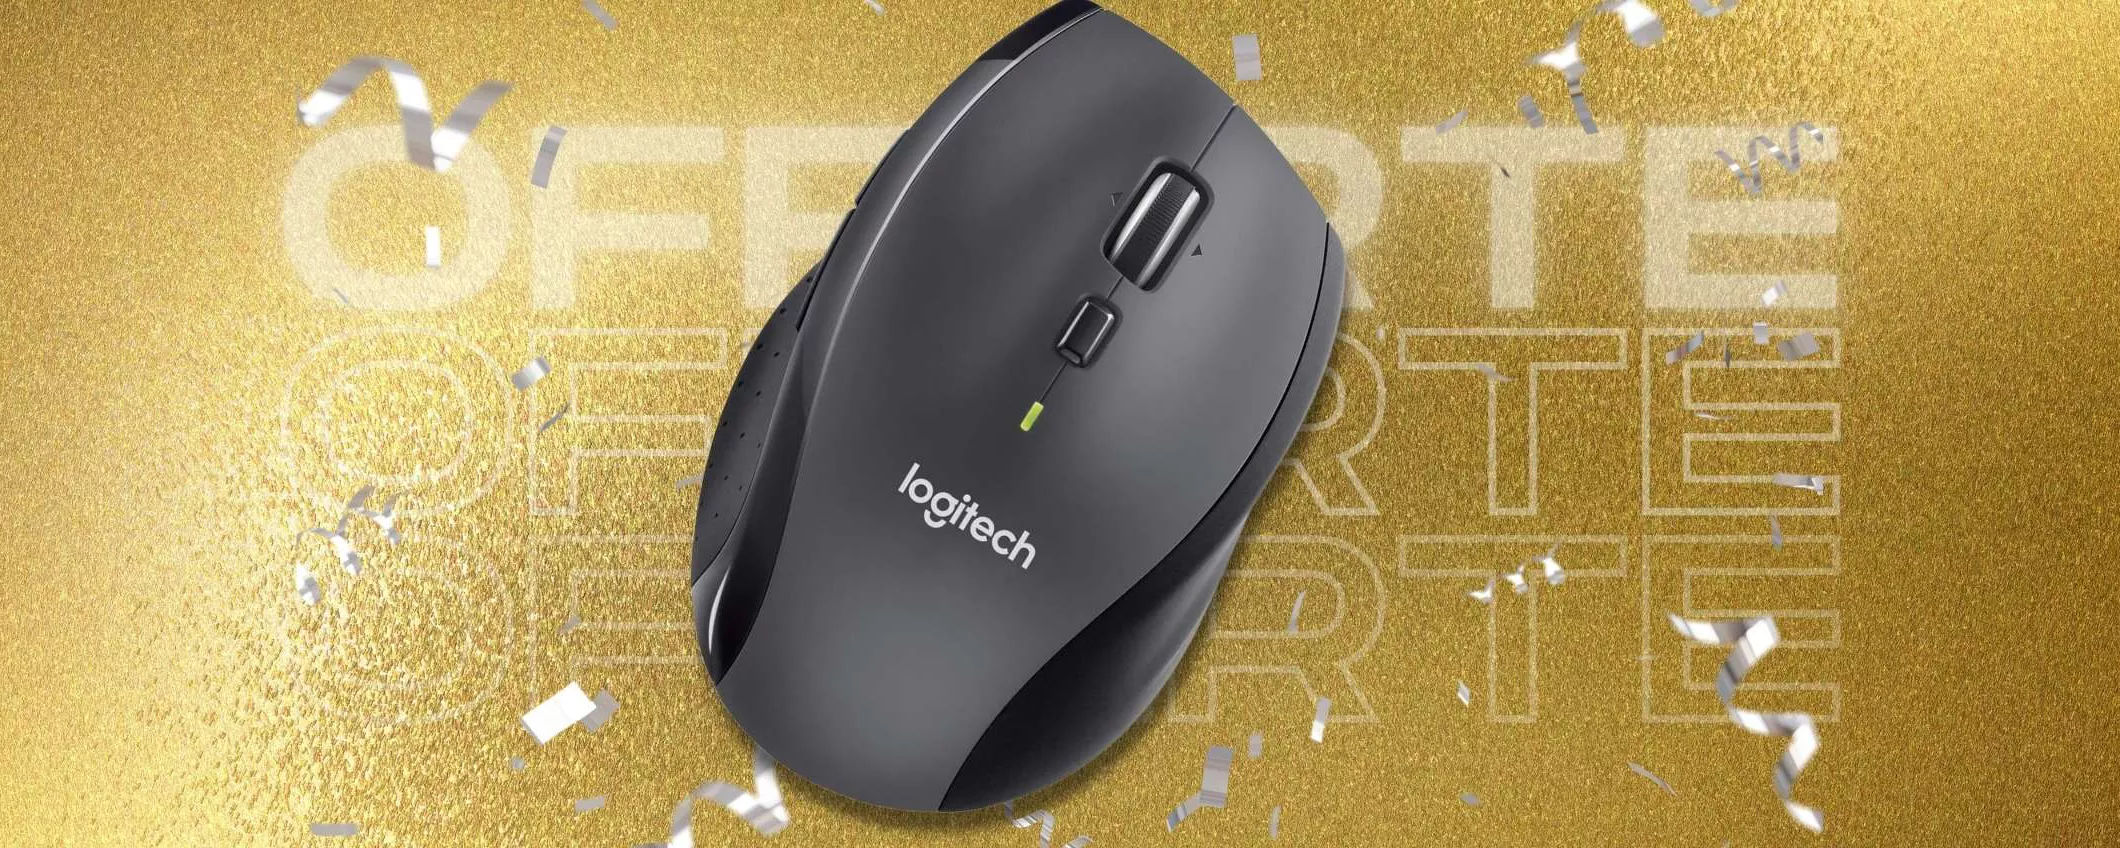 Logitech M705: mouse wireless con 5 pulsanti da personalizzare (24€)